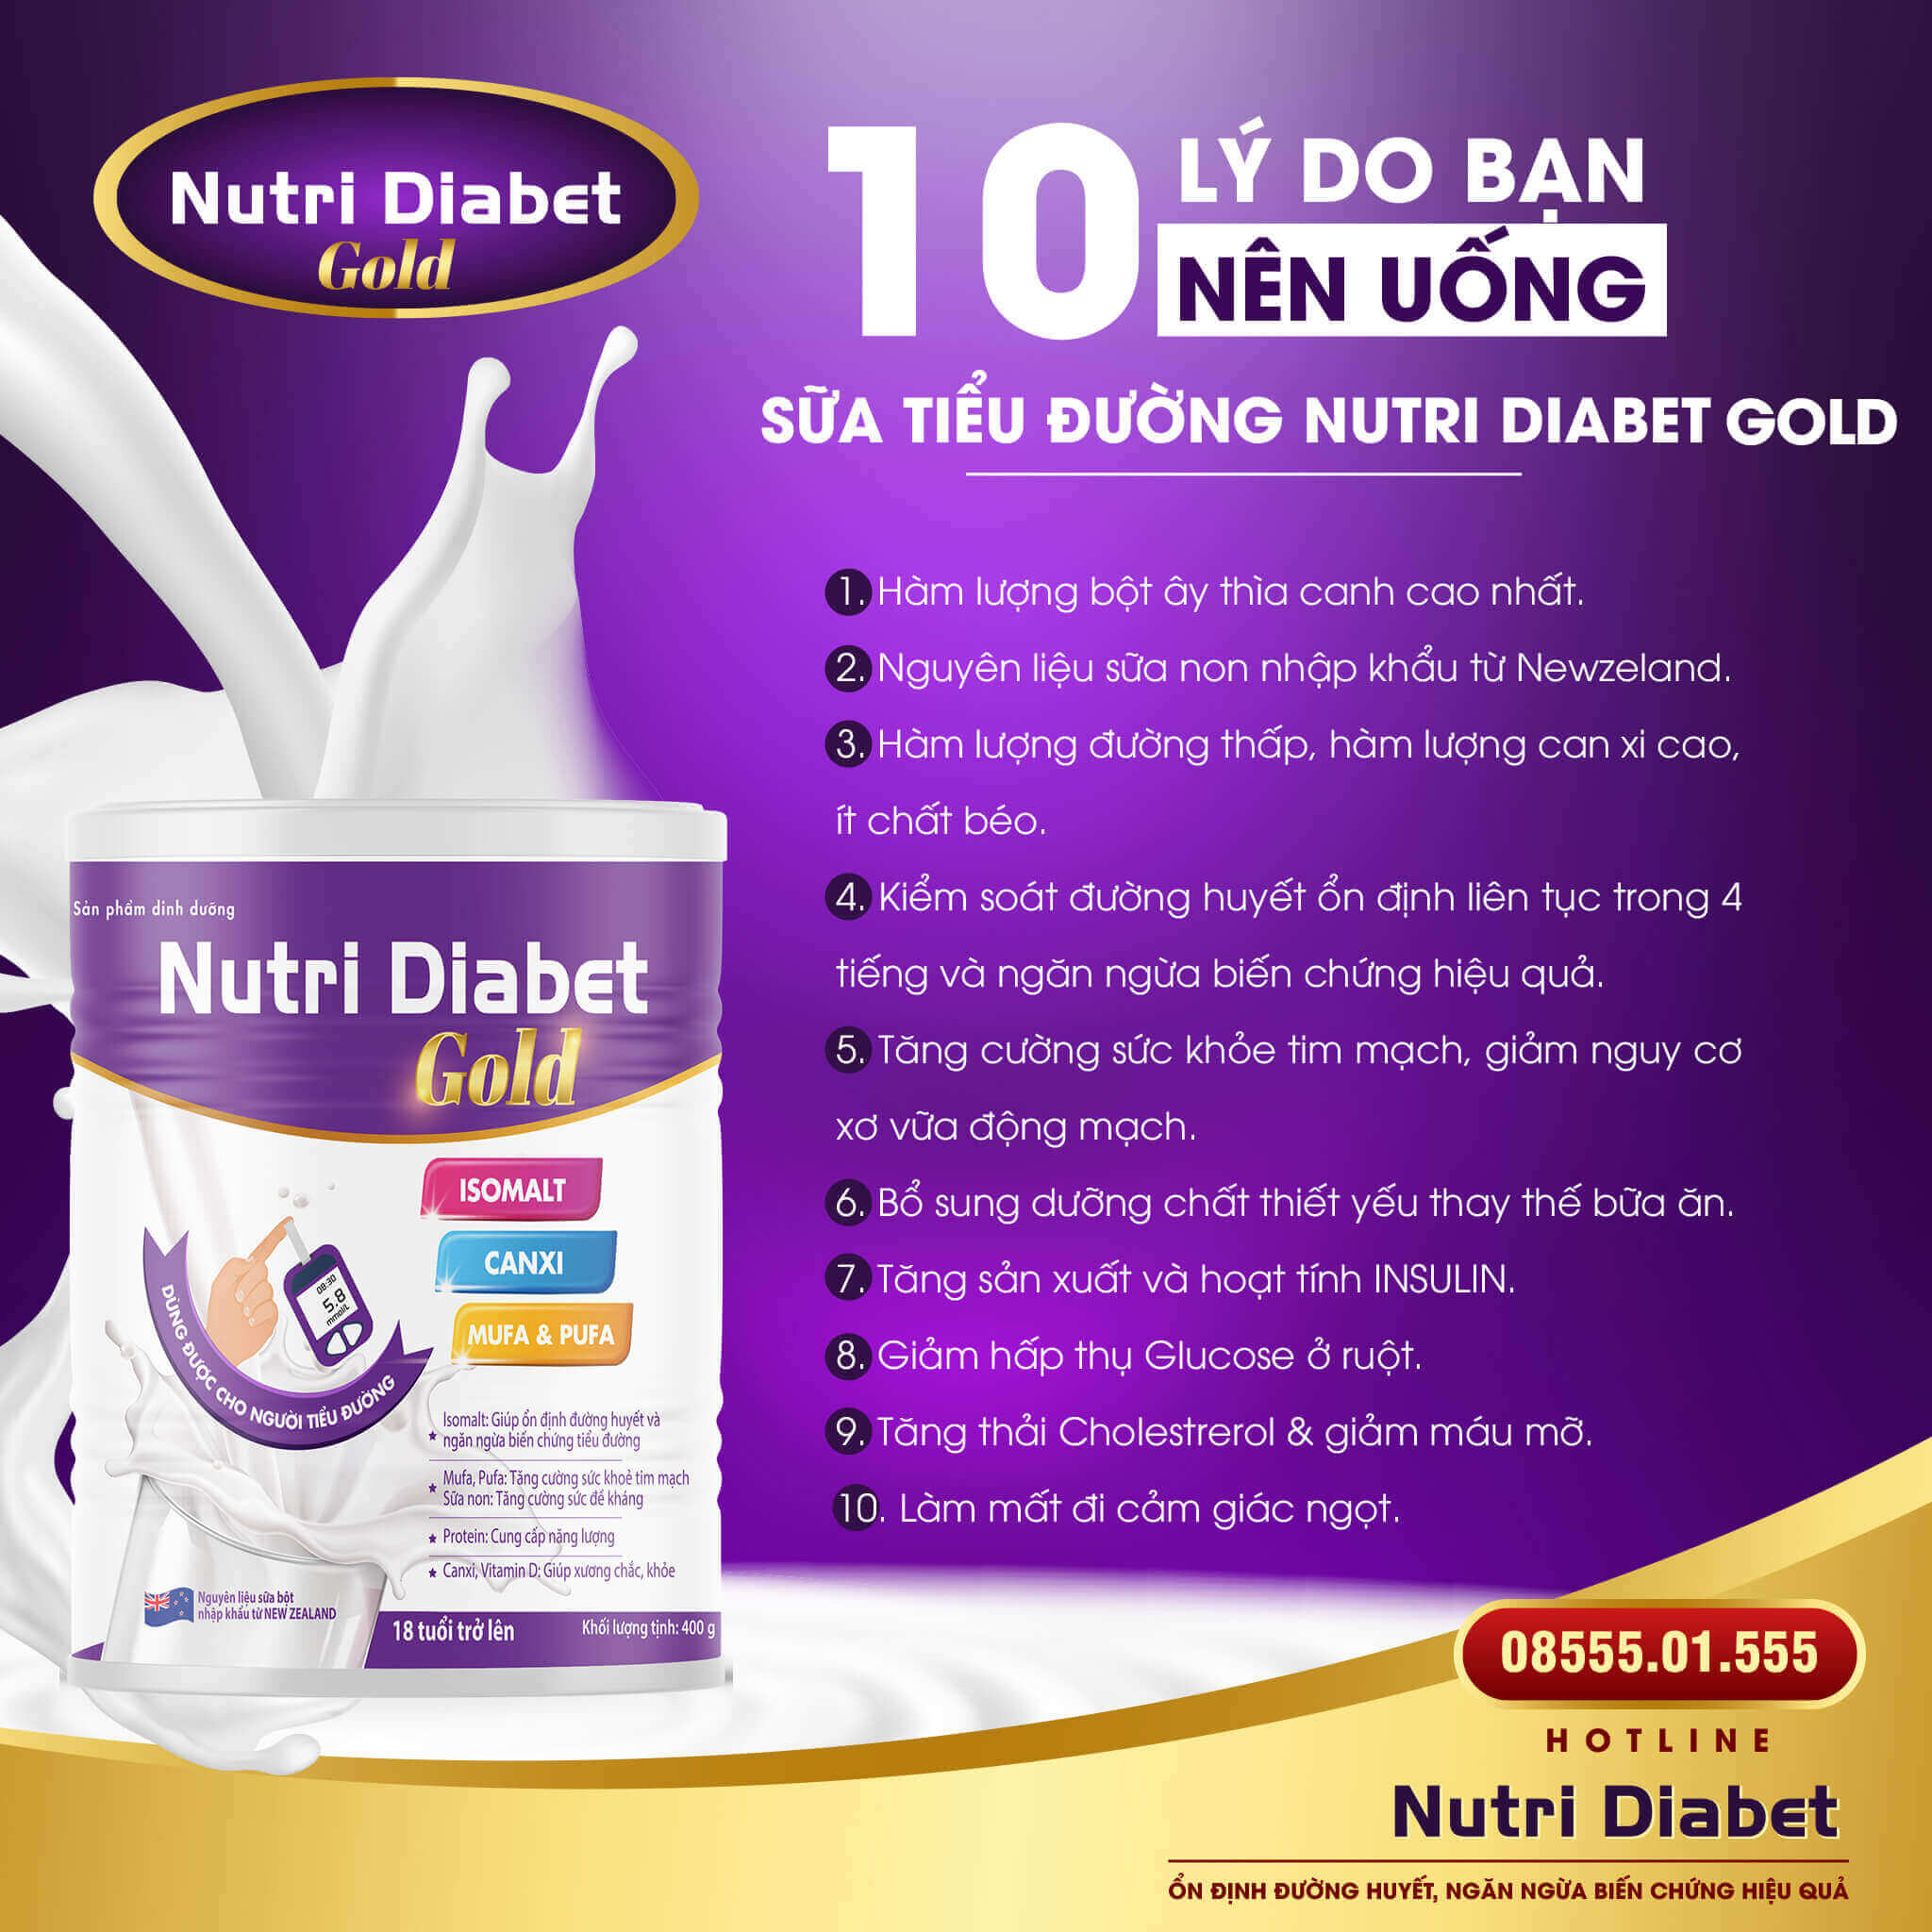 lợi ích khi sử dụng sữa nutri diabet gold